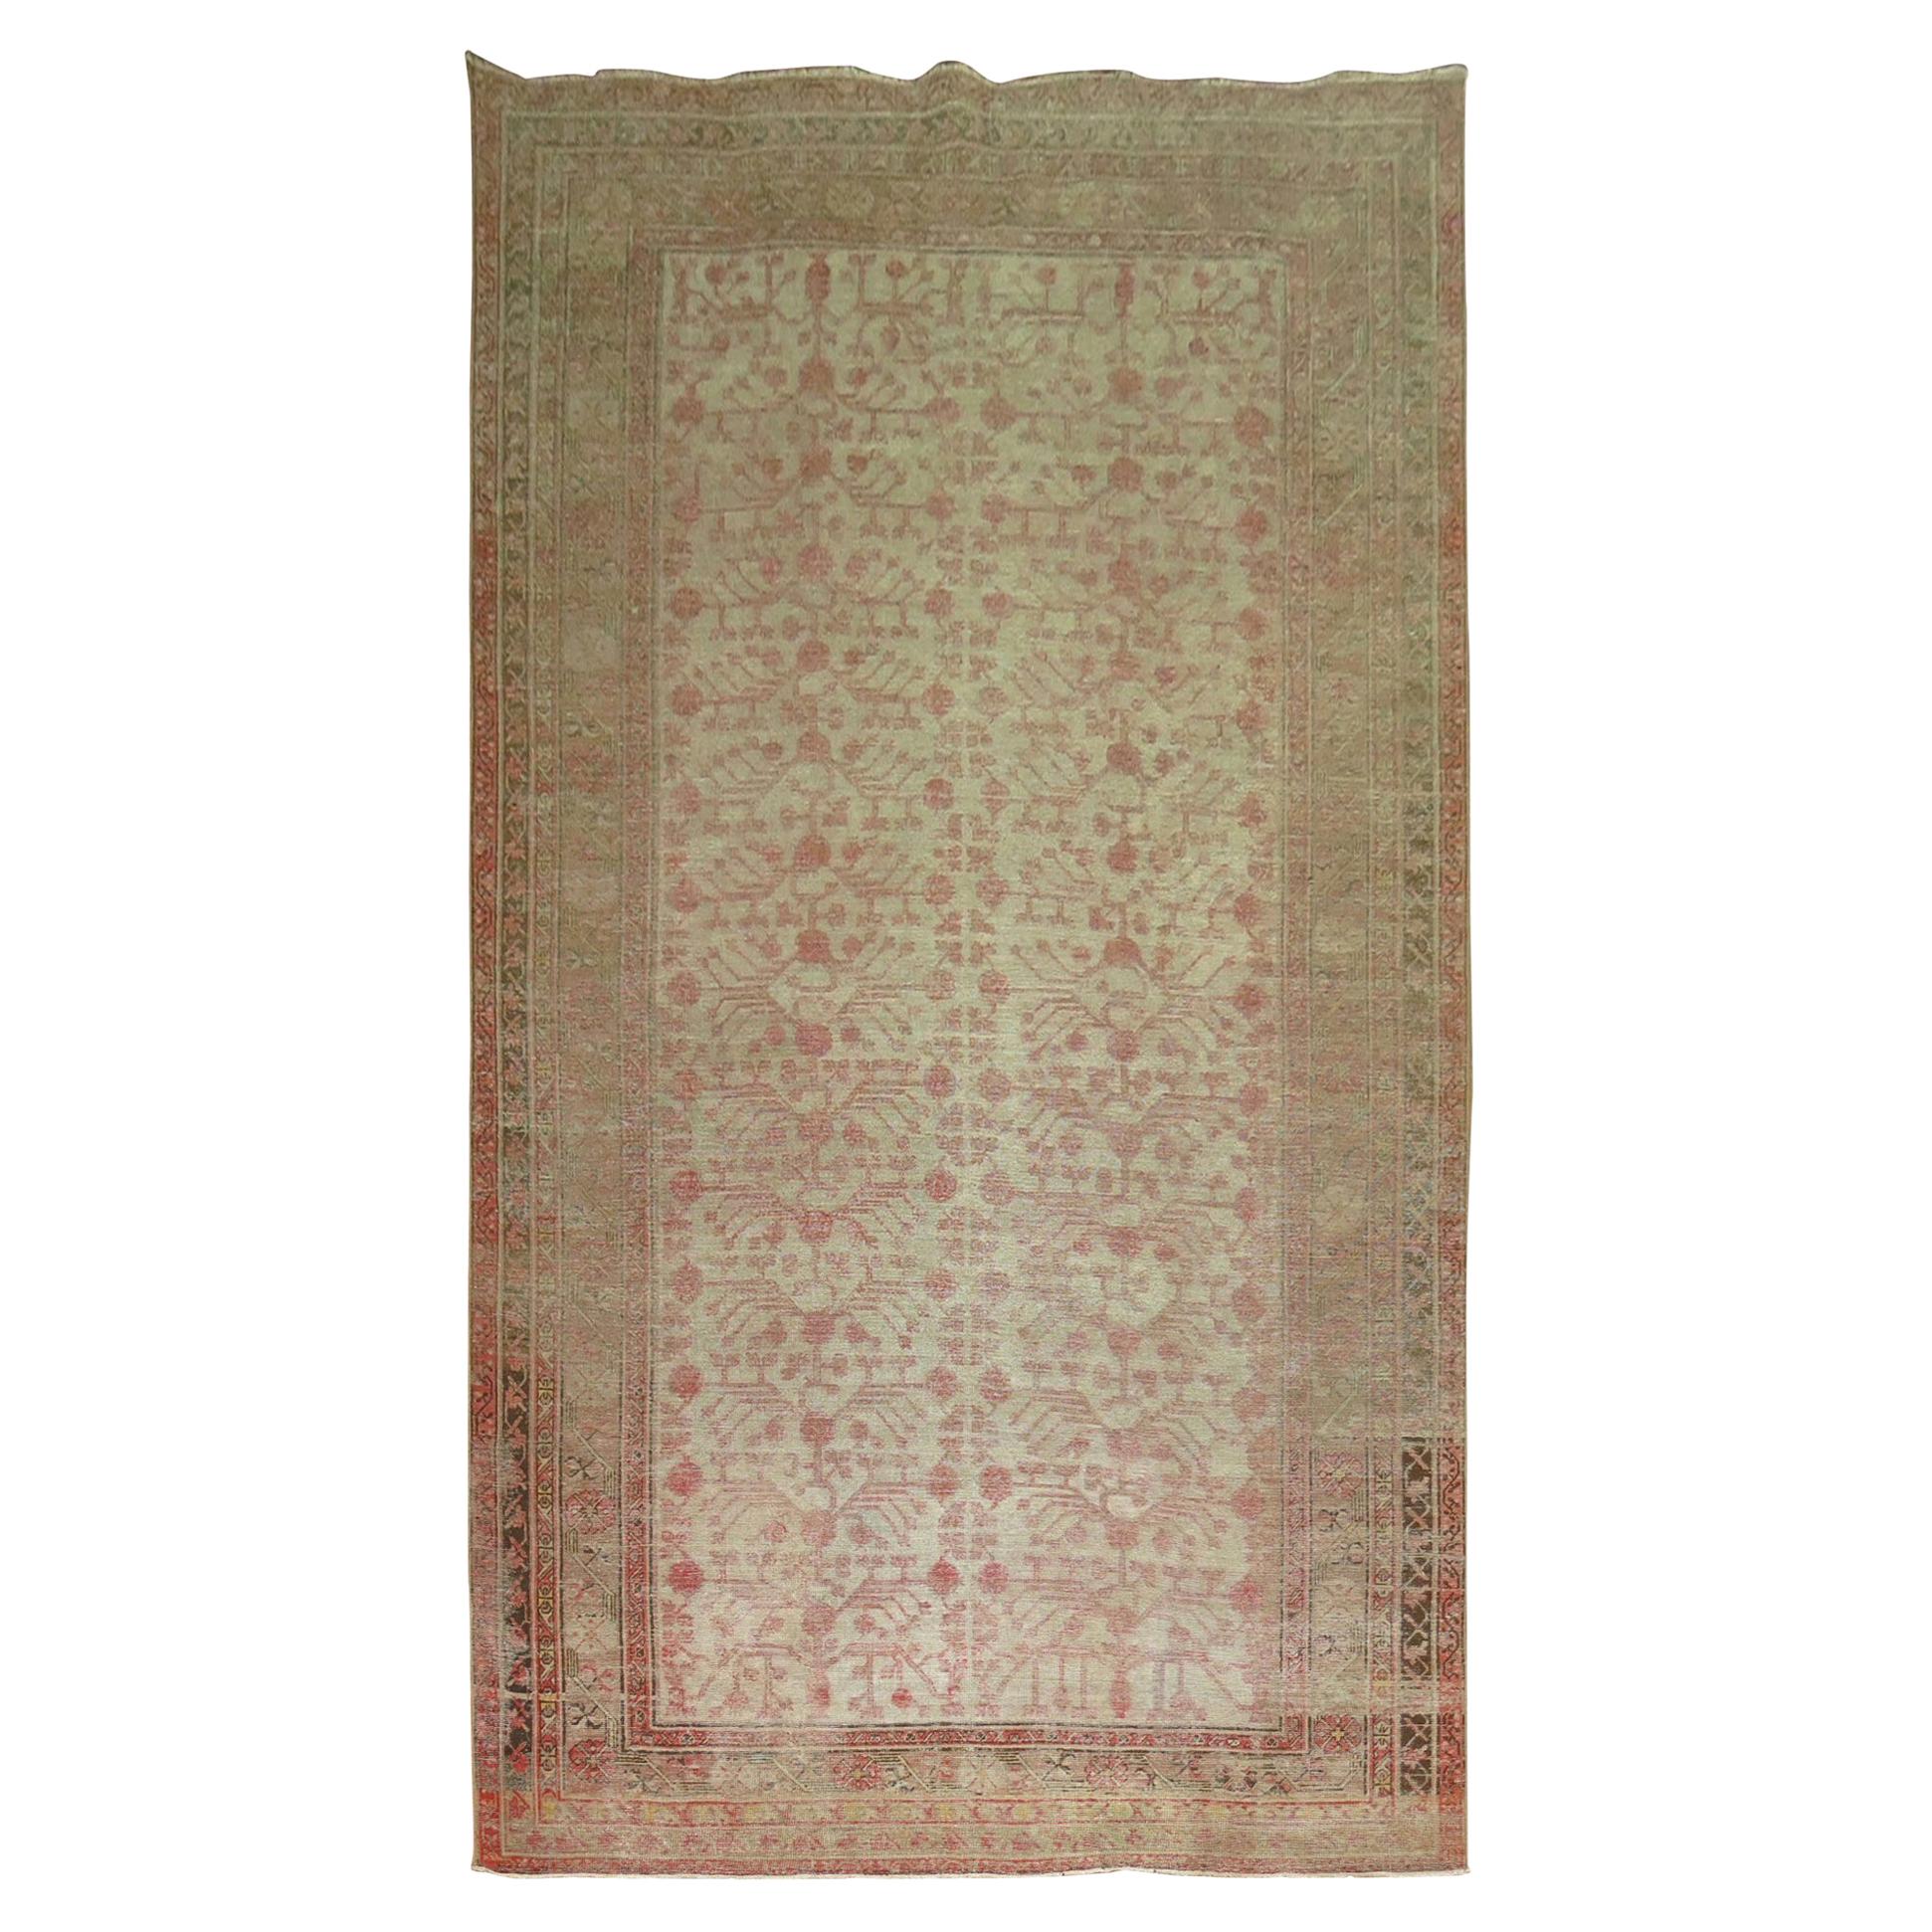 Granatapfel Khotan Shabby Chic Ende des 19. Jahrhunderts Großer Galeriegroßer Teppich